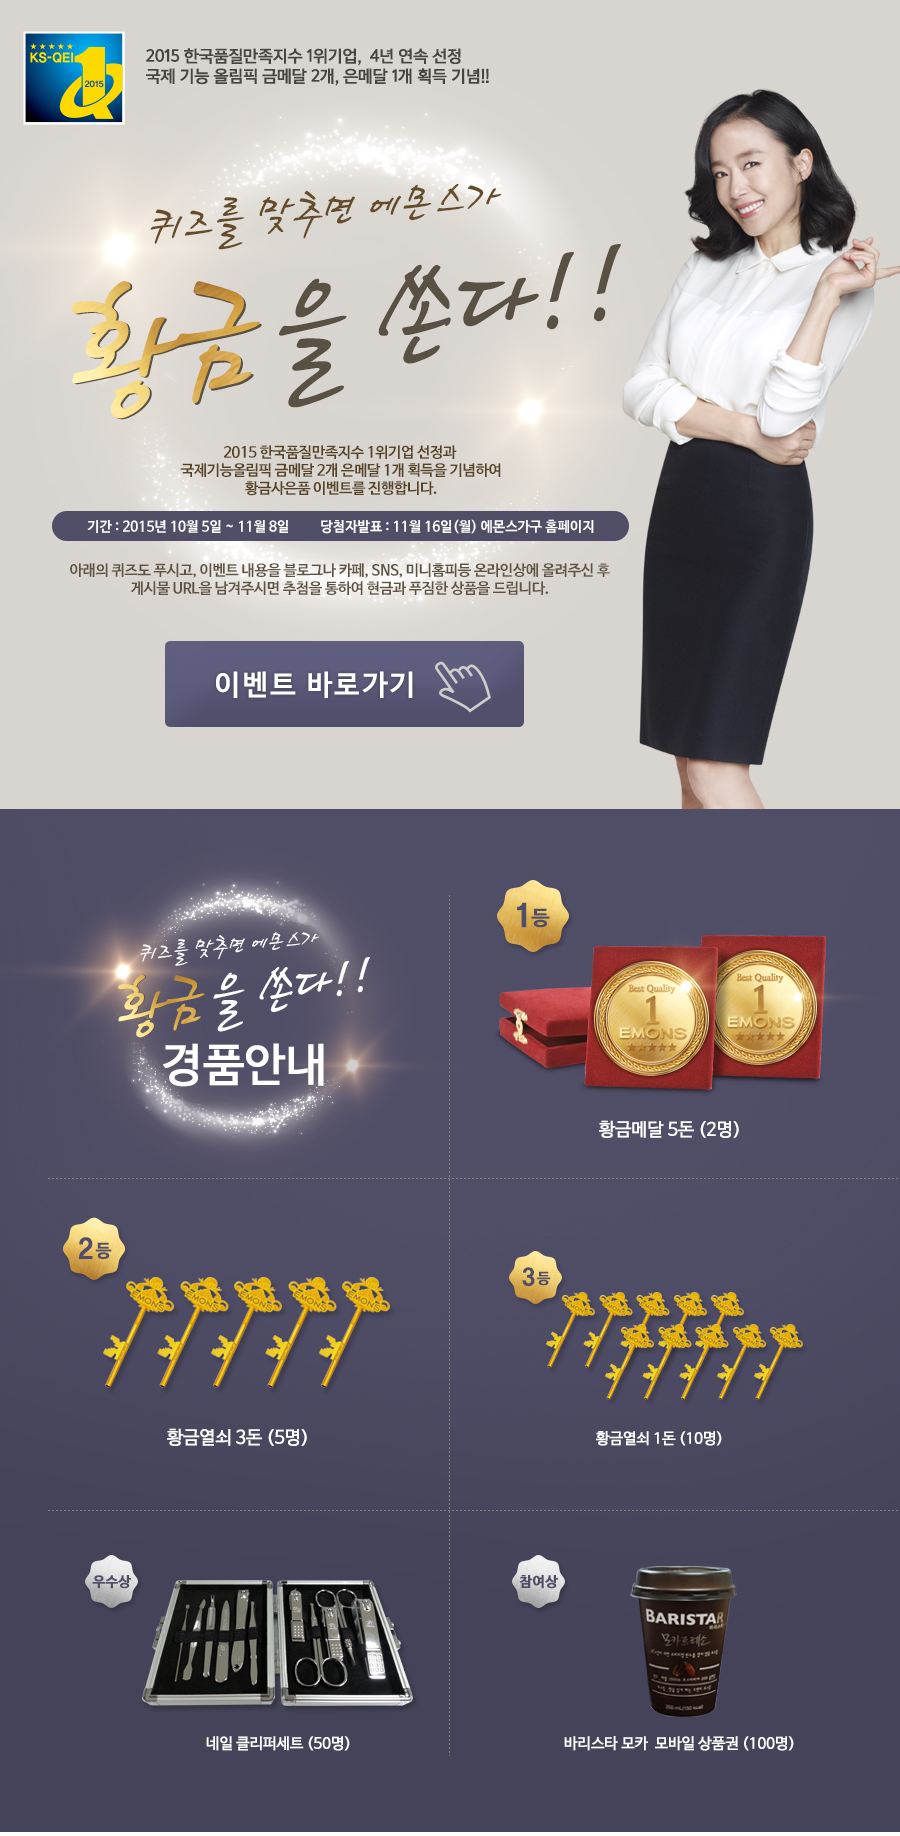 2015 한국품질만족지수 1위기업, 4년 연속 선정, 국제 기능 올림픽 금메달 2개, 은메달 1개 기념 이벤트